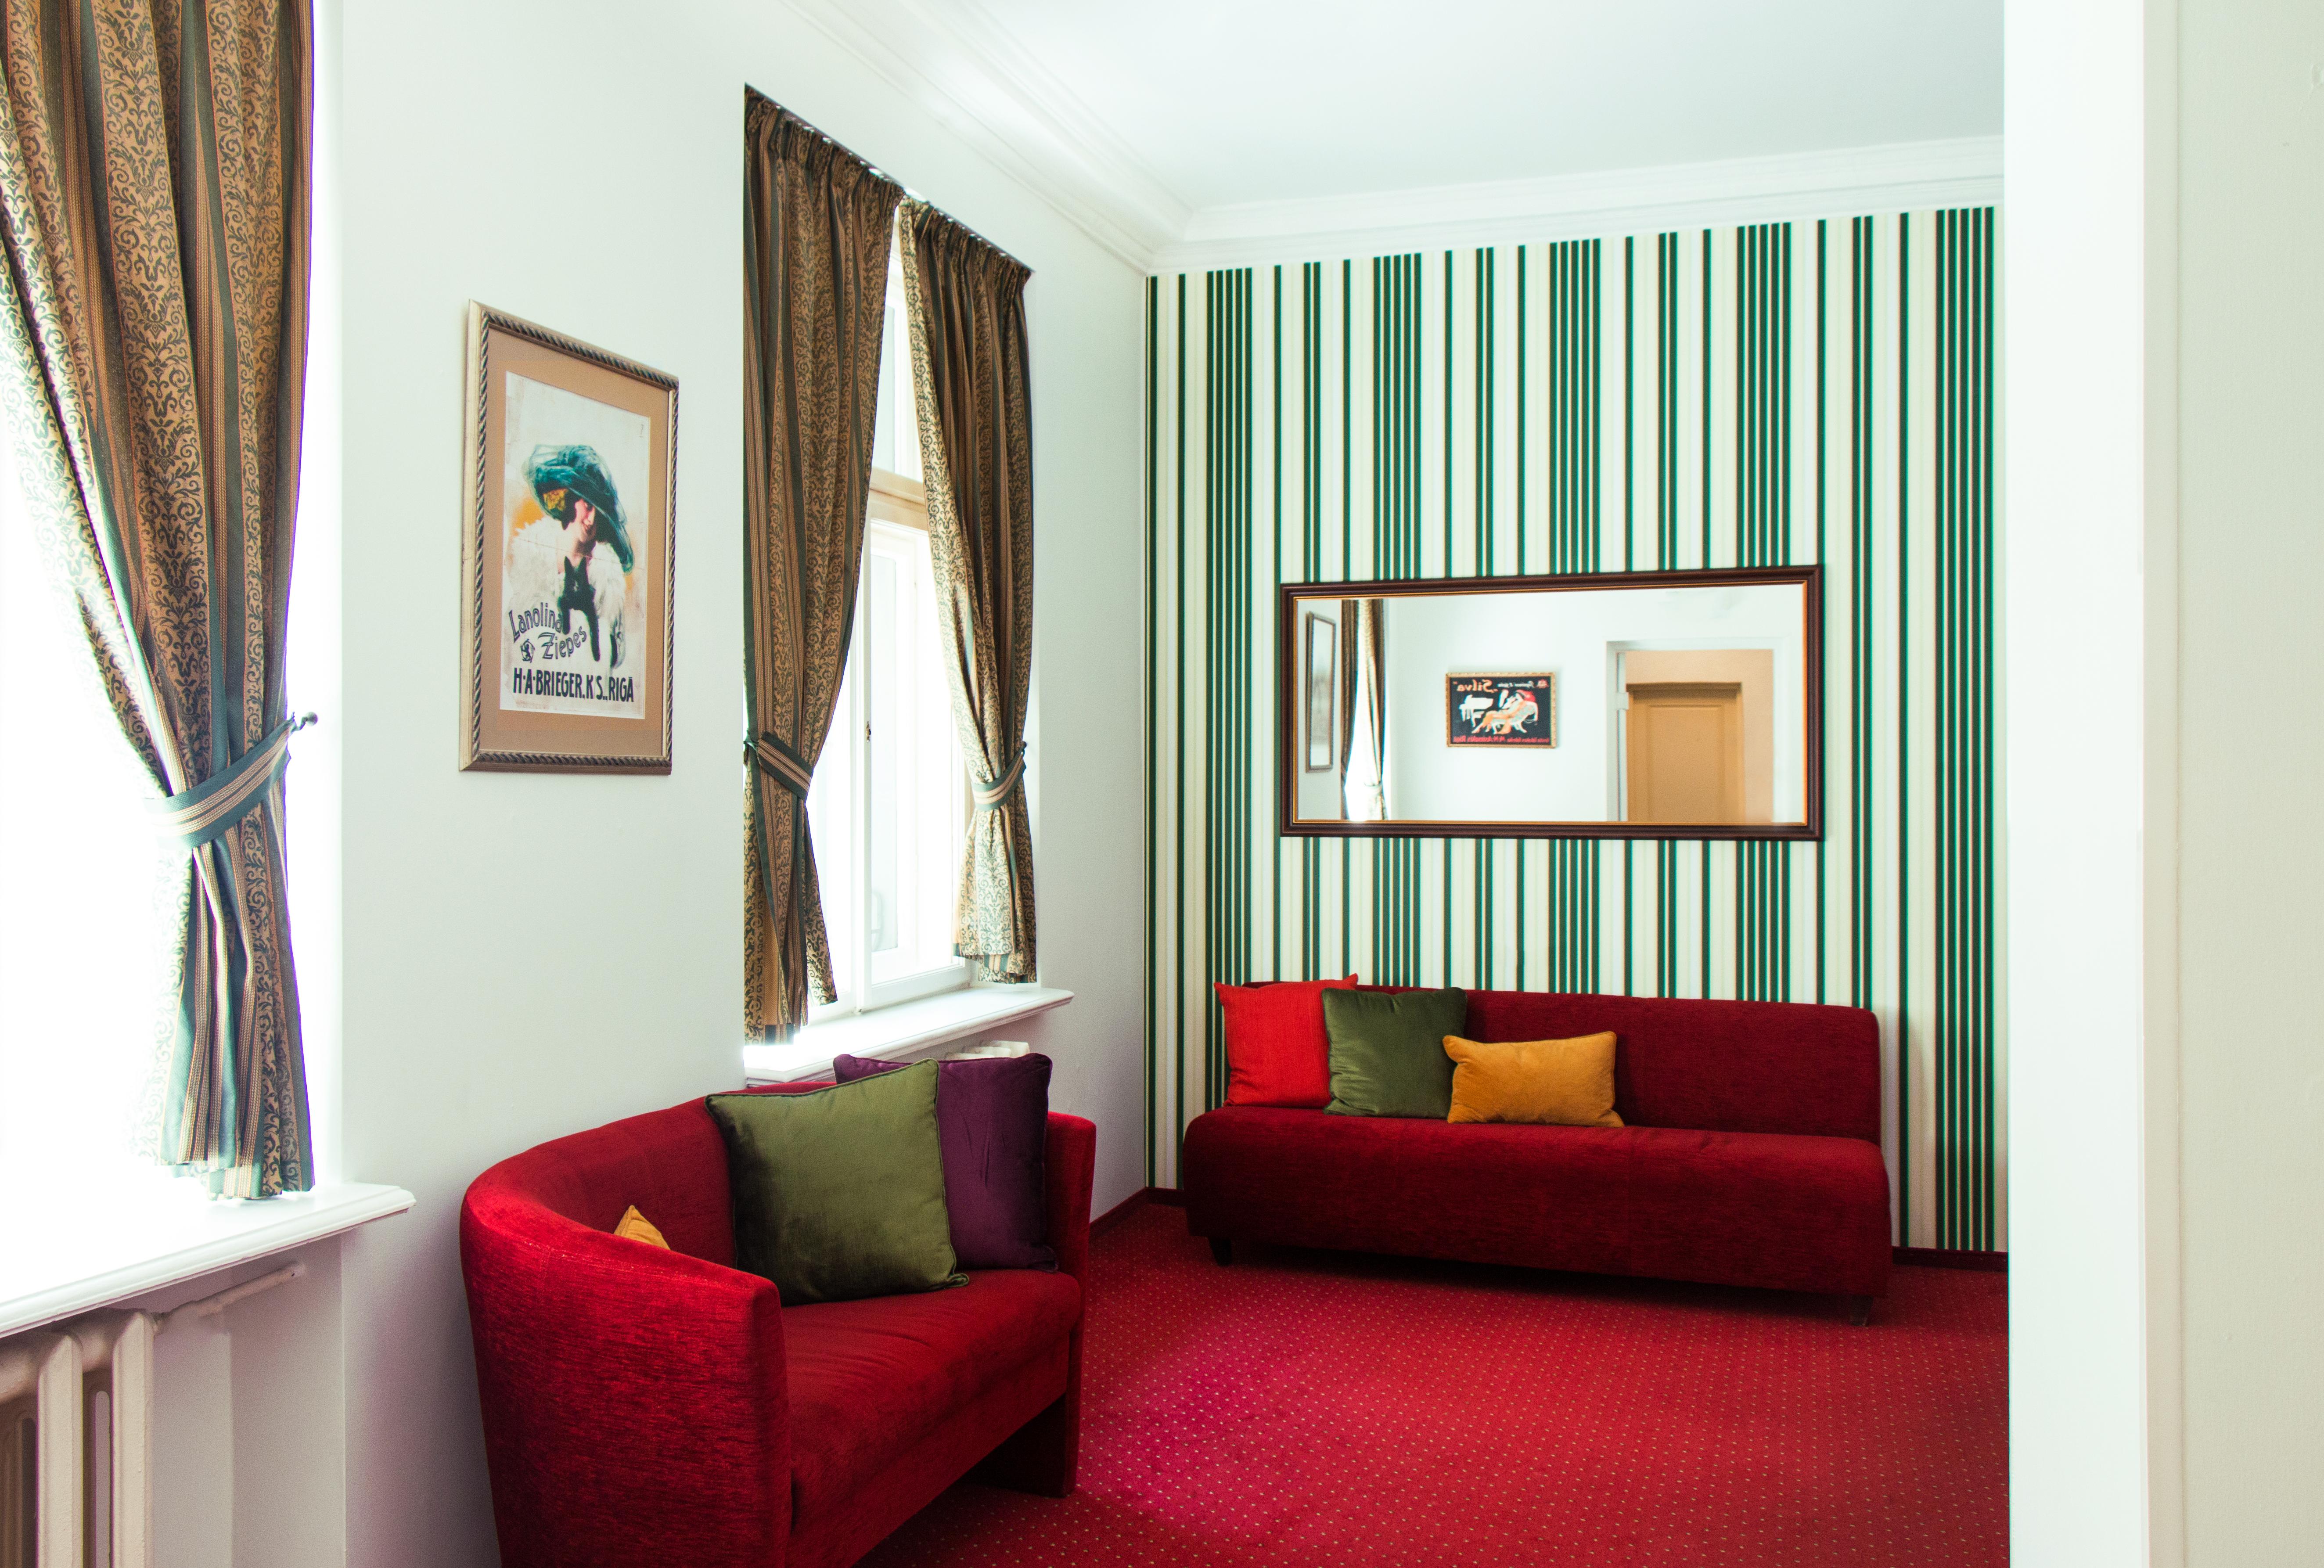 ריגה Hestia Hotel Draugi מראה חיצוני תמונה